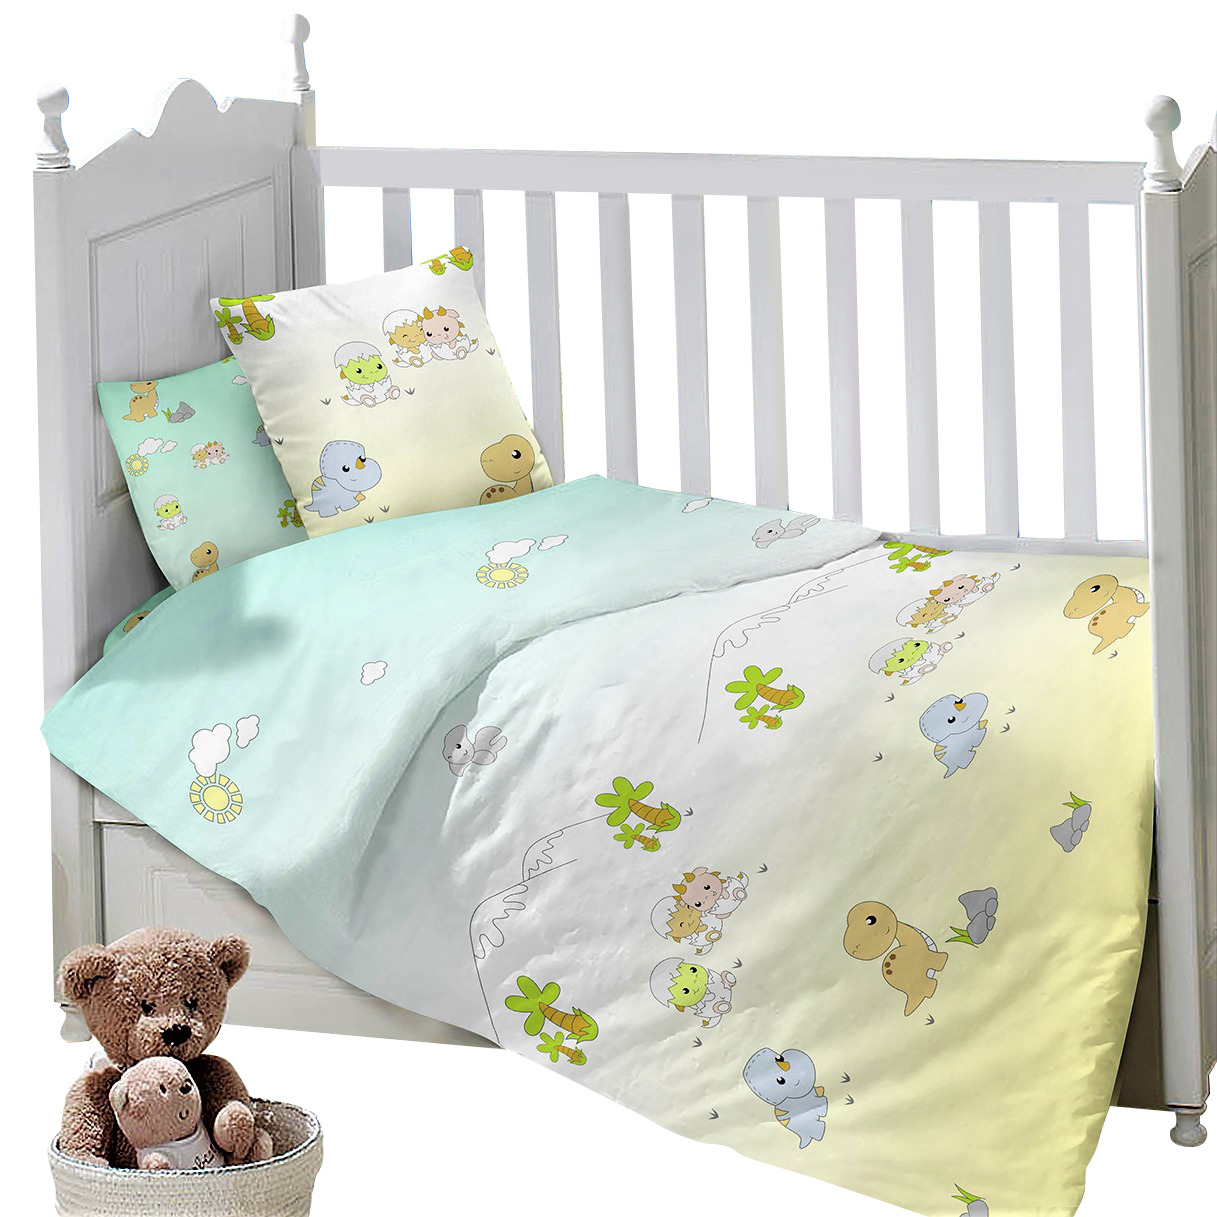 фото Комплект постельного белья Sweet Baby Gioco, 419297, голубой, 3 предмета